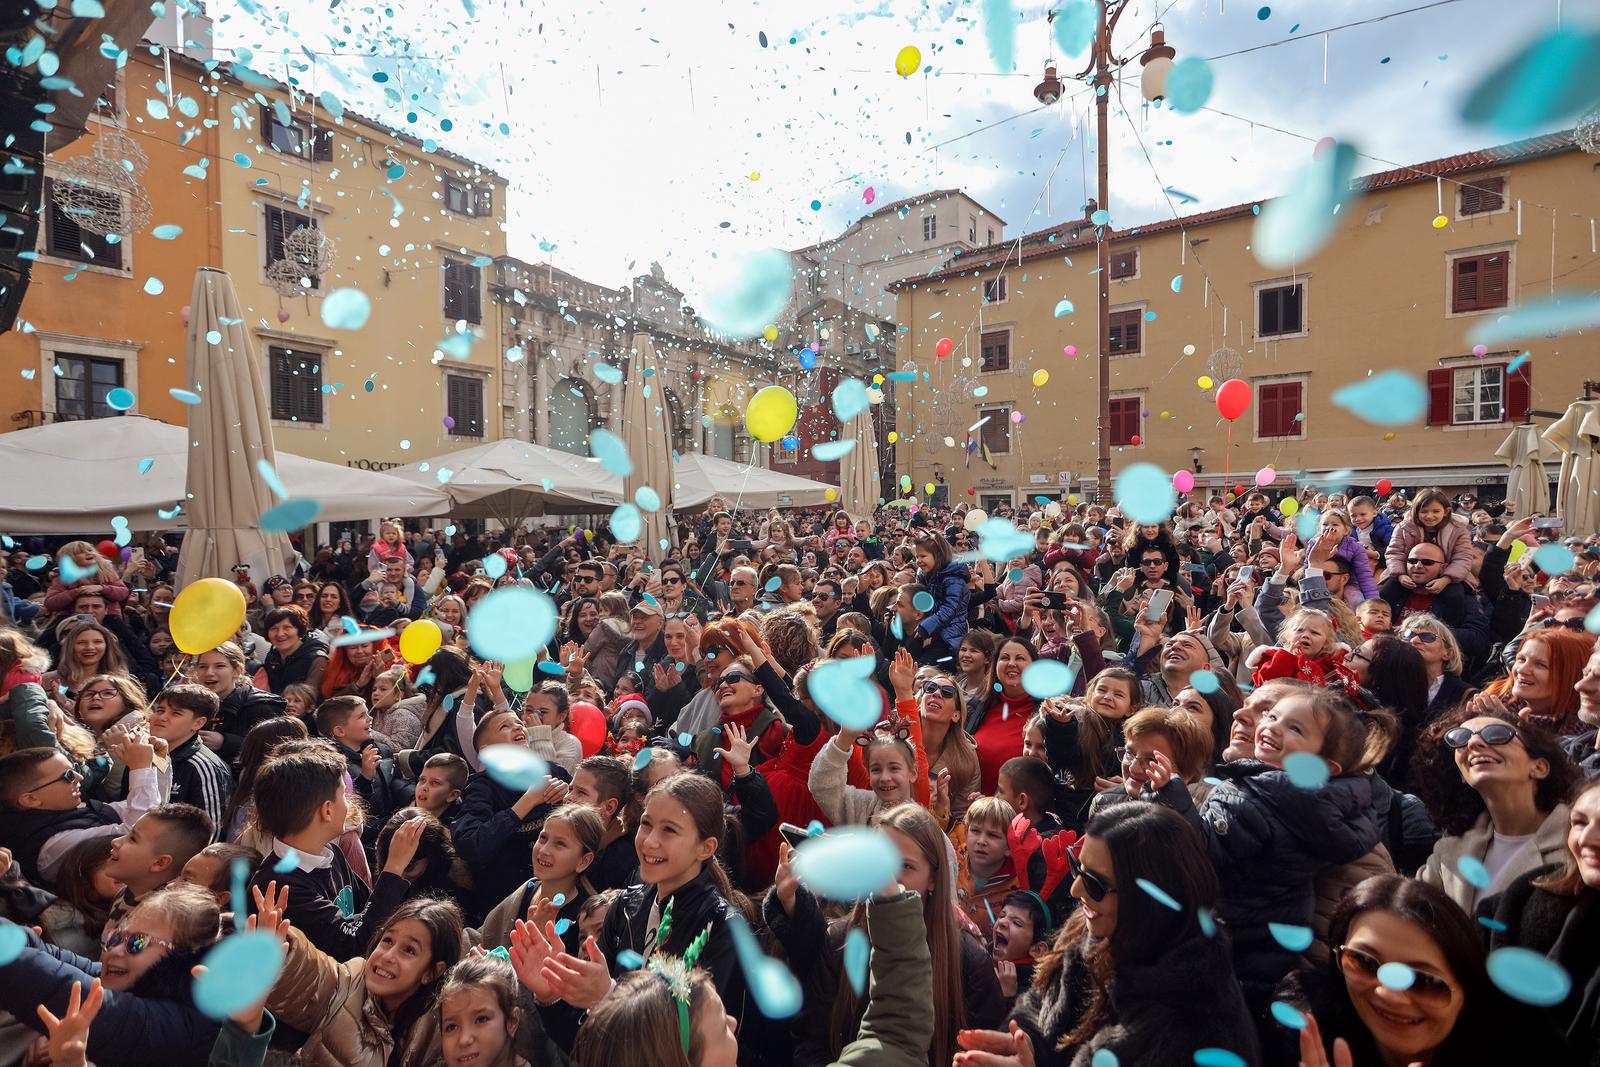 31.12.2023., Zadar - Pustanjem balona sa helijem najmjadji su usli u Novu godinu. Photo: Sime Zelic/PIXSELL